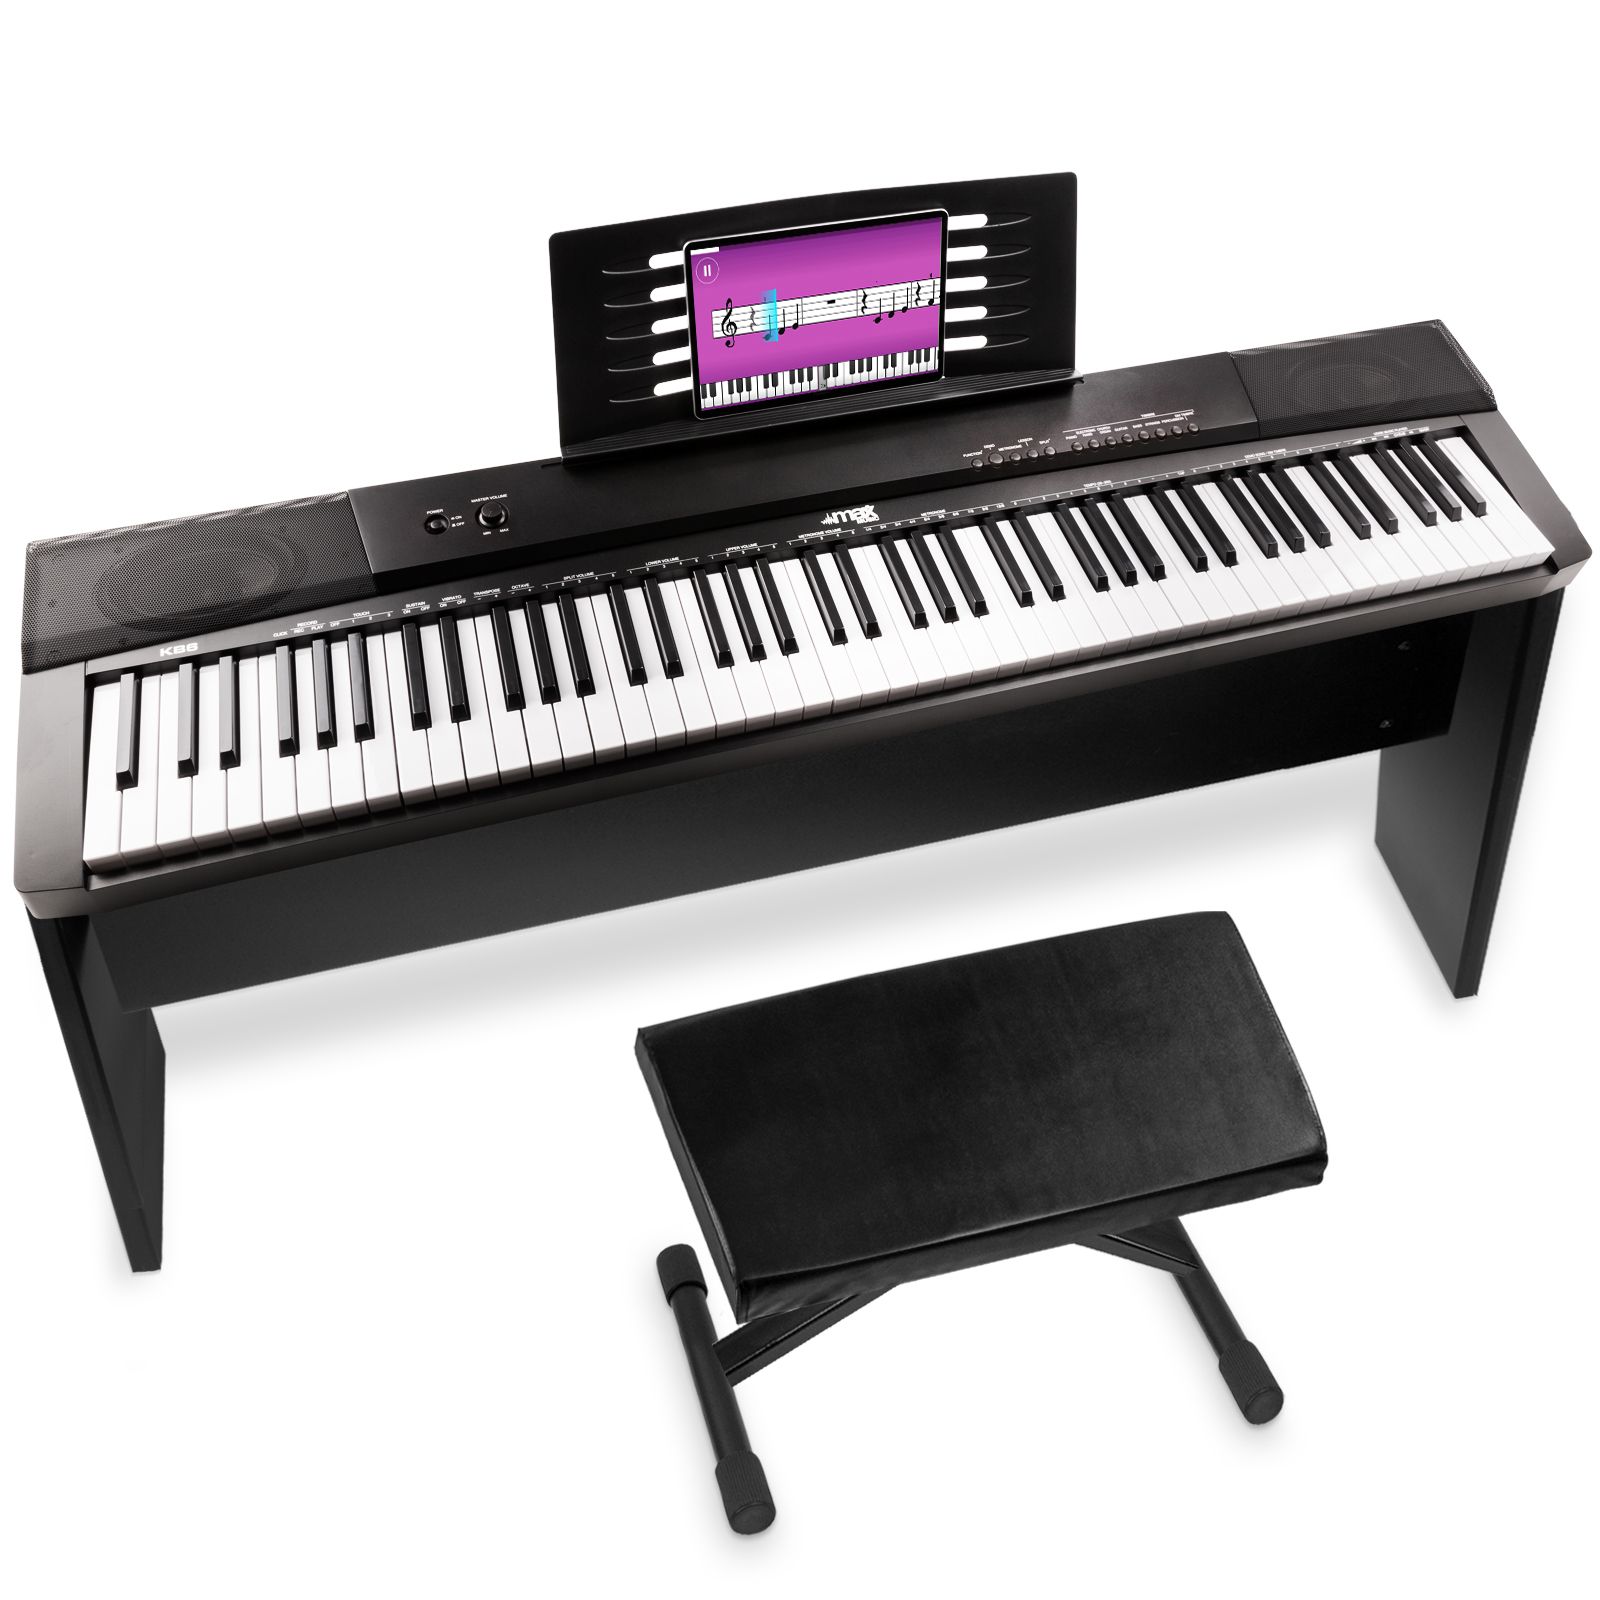 Digitale piano - MAX KB6W keyboard piano met 88 toetsen, USB midi, sustainpedaal, meubel en bankje - 88 gewogen en aanslaggevoelige toetsen